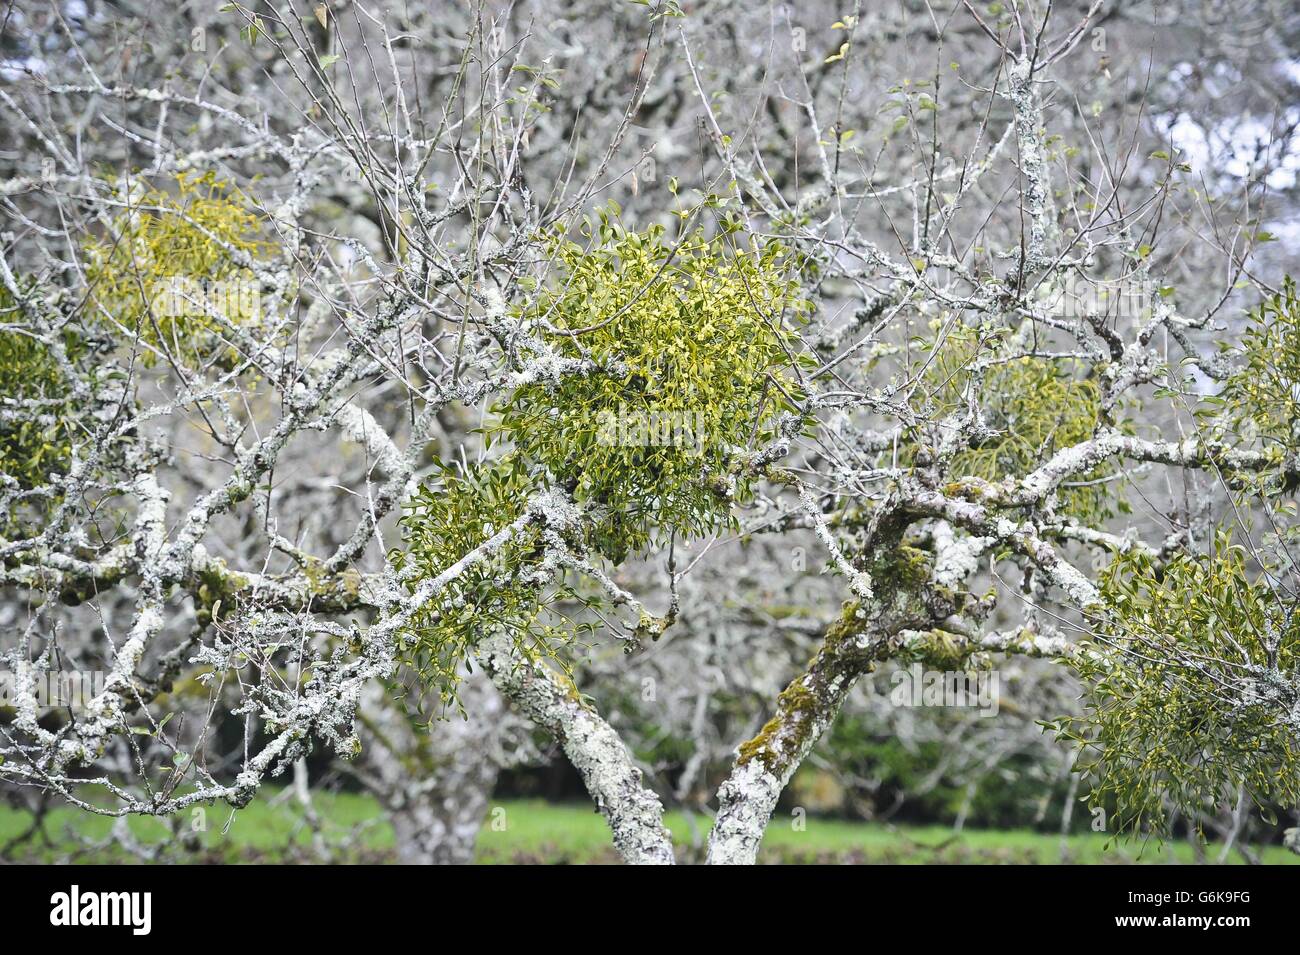 Mistletoe at Cotehele Stock Photo